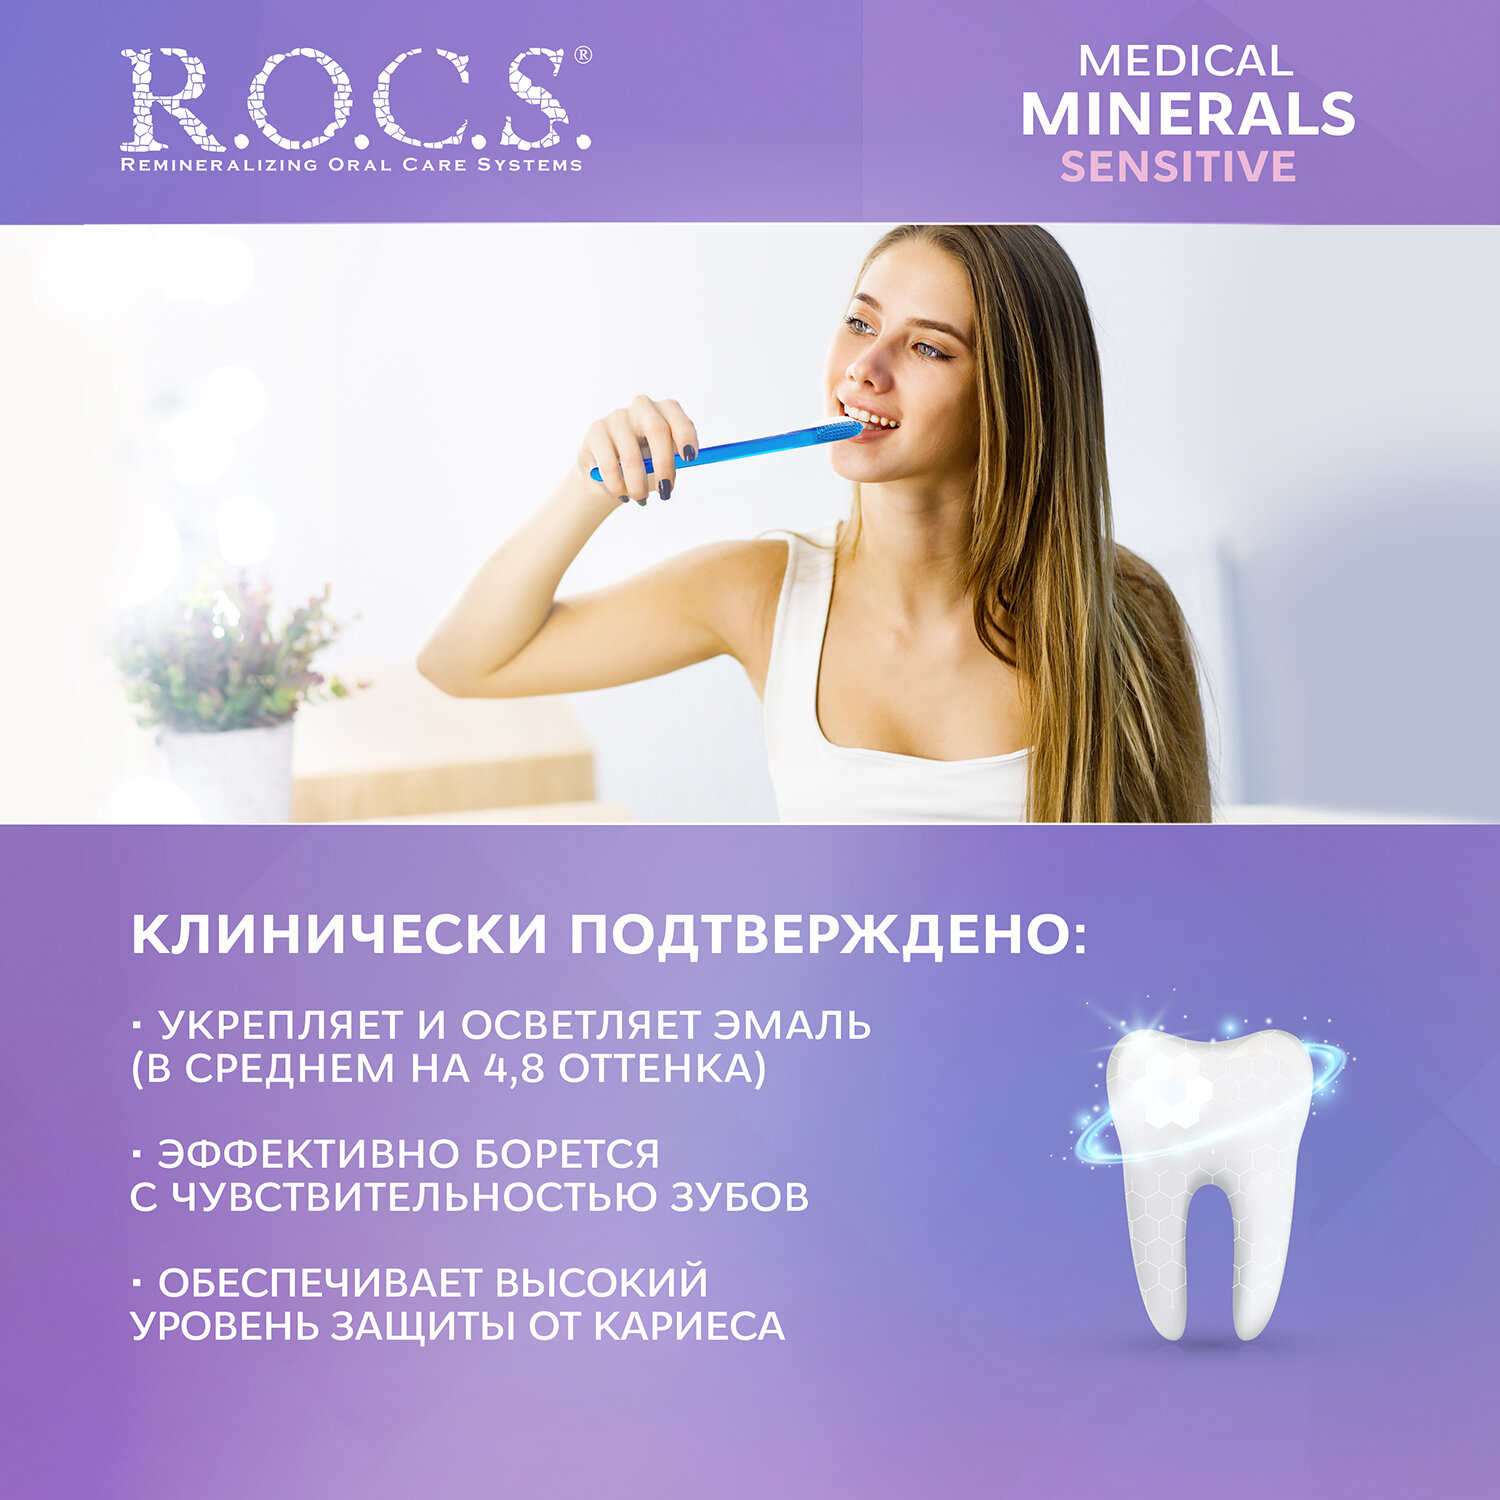 Гель R.O.C.S (Рокс) для зубов реминерализующий Medical Sensitive 45 г ООО "ЕВРОКОСМЕД-Ступино" RU - фото №4